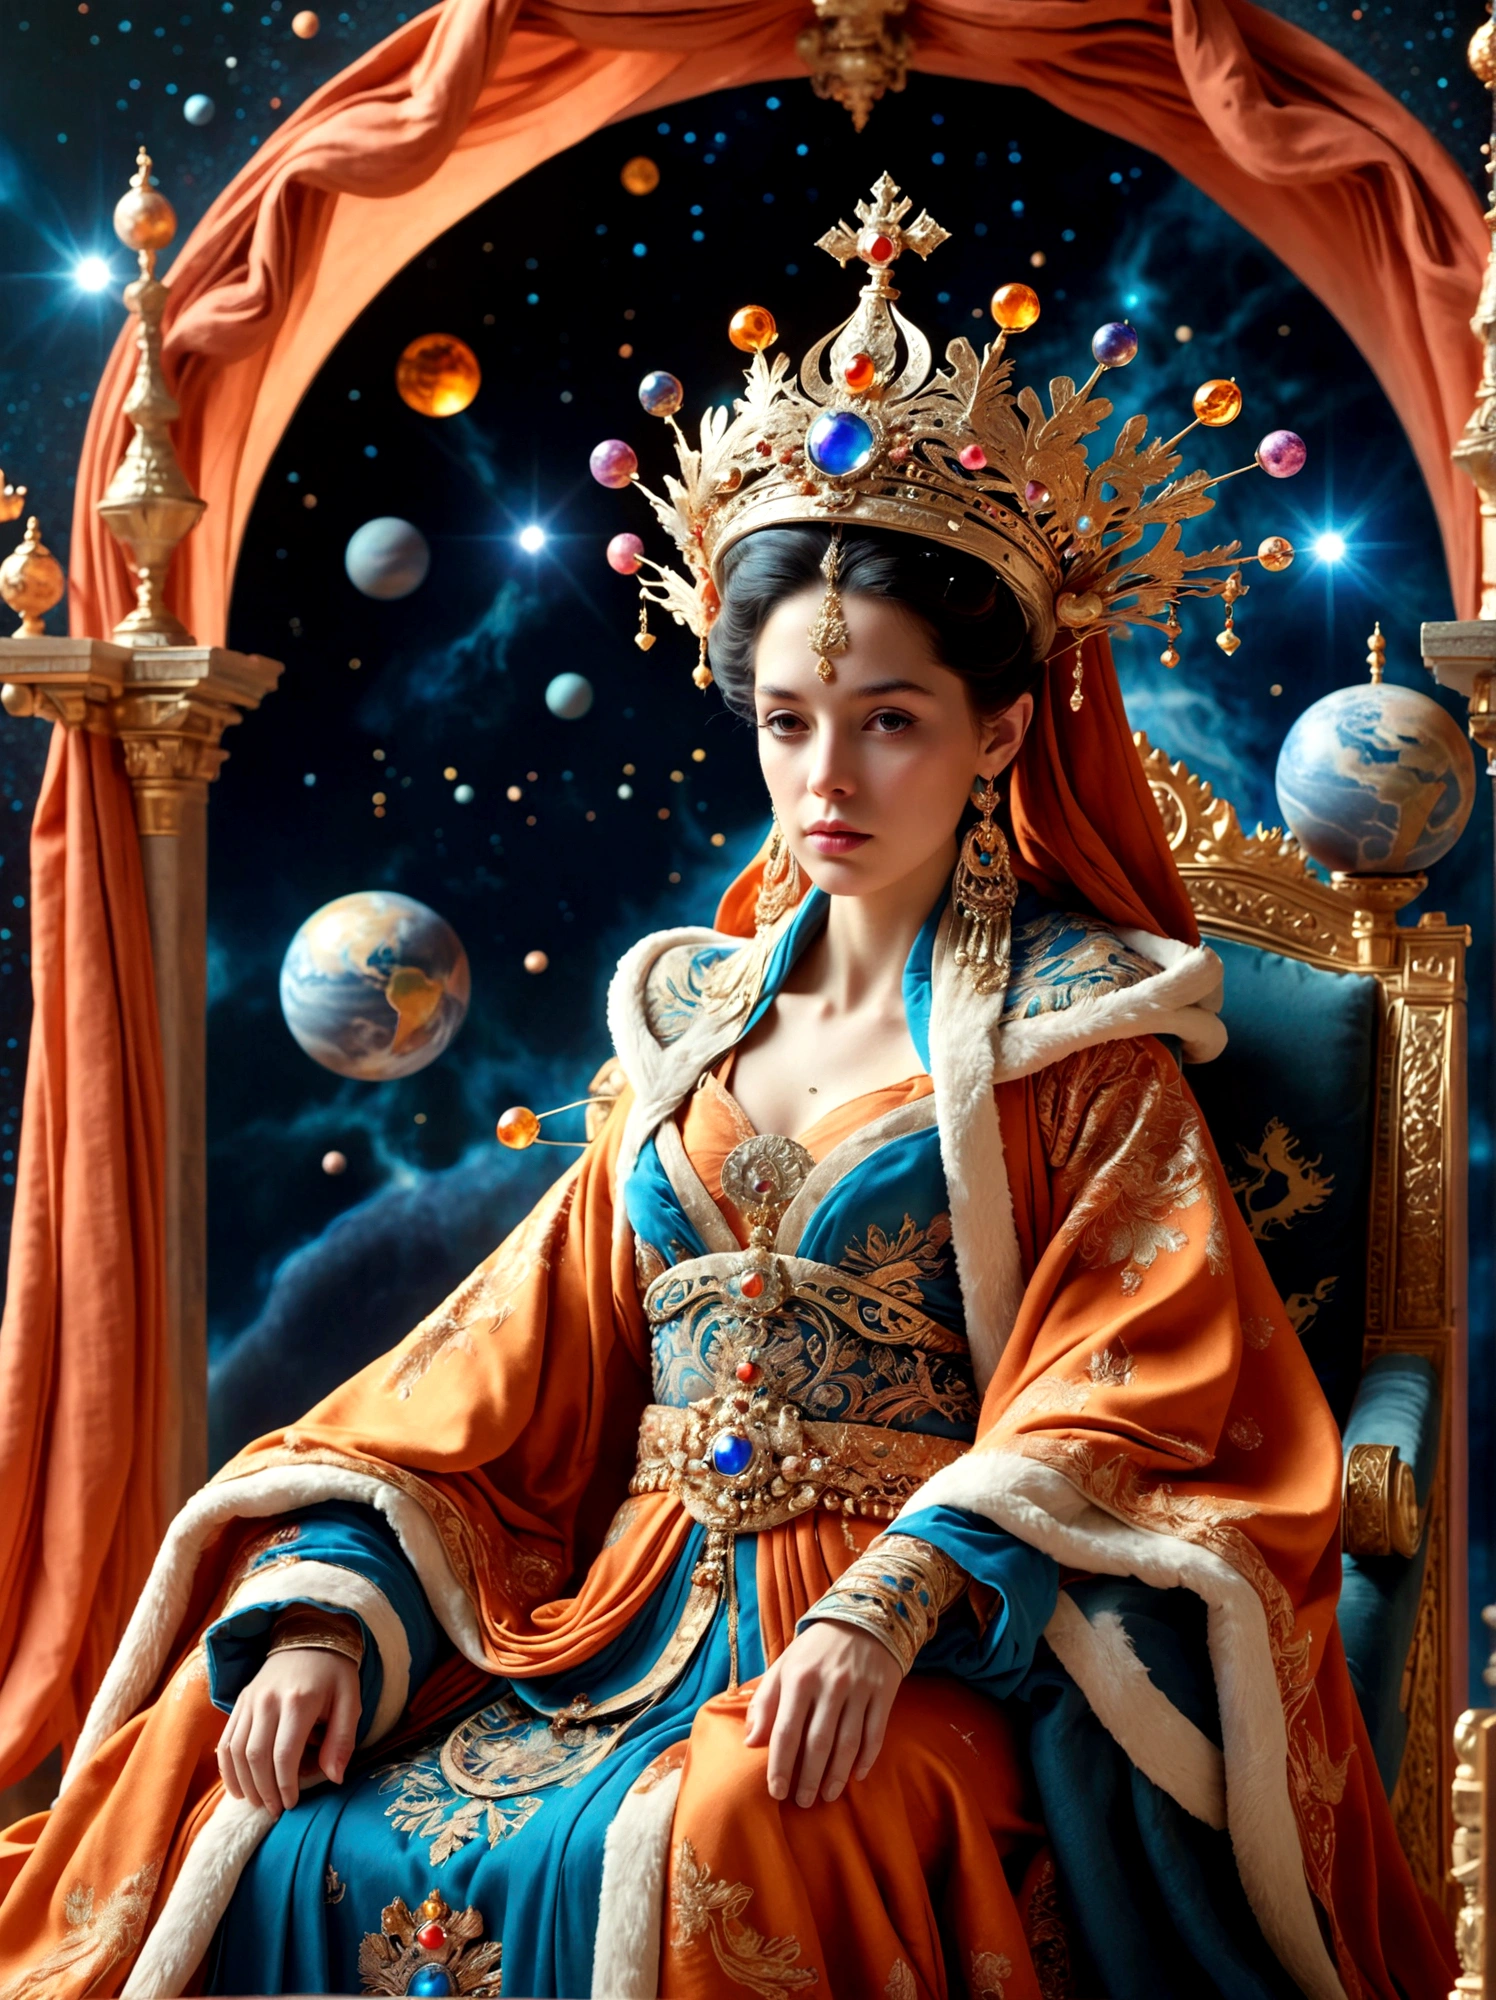 (Королева в мифологии:1.3)，Королевская фигура в роскошном одеянии, украшенный большой короной, сидит на троне, Обстановка потусторонняя и сюрреалистичная, расположенный в огромном пространстве космоса, Фигурка расположена на миниатюрной планете, полностью окутанной богатой тканью мантии., отражающий элемент королевской экстравагантности